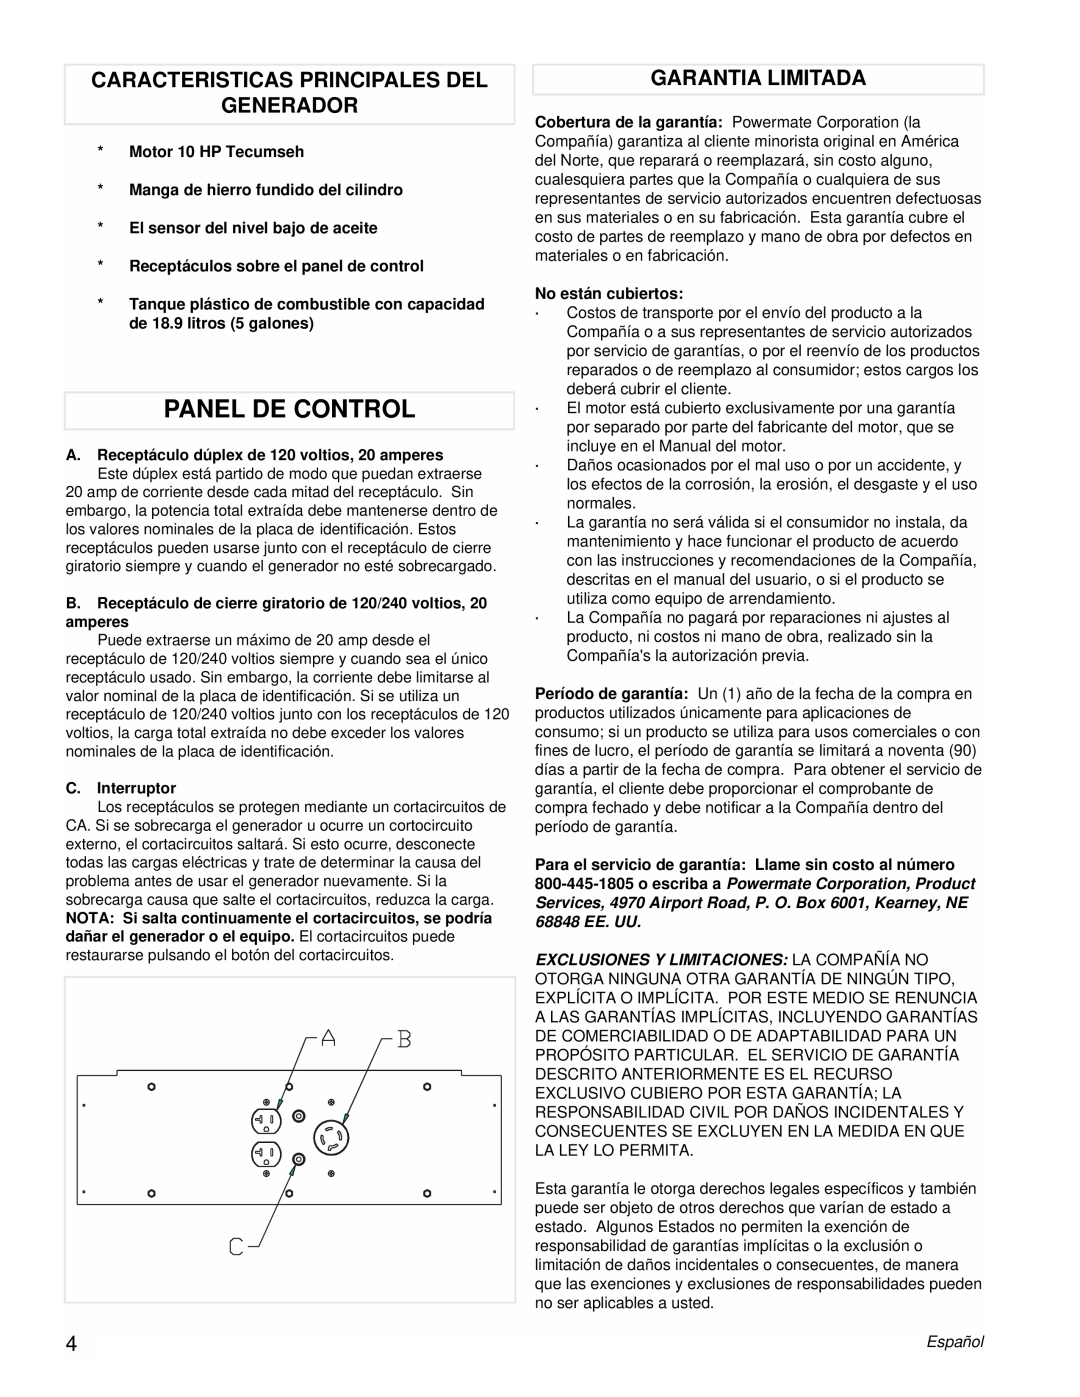 Powermate PMA525302.03 manual Panel De Control, Caracteristicas Principales Del Generador, Garantia Limitada 